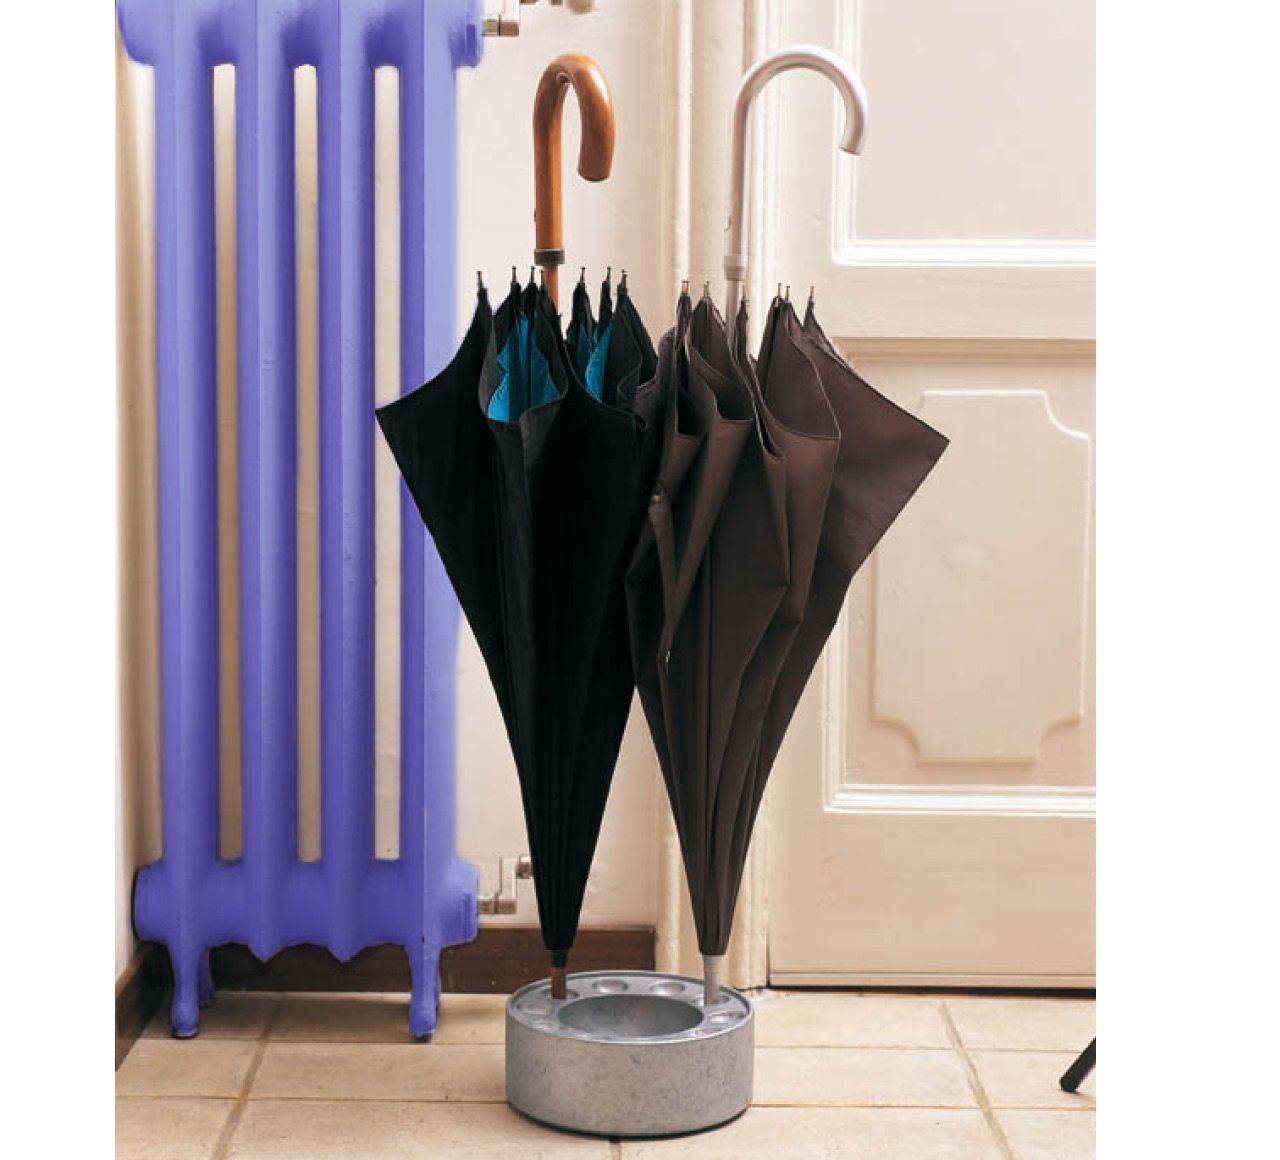 Как постирать зонт в домашних условиях: можно ли в стиральной машине и руками, как удалить пятна и высушить зонтик после стирки?